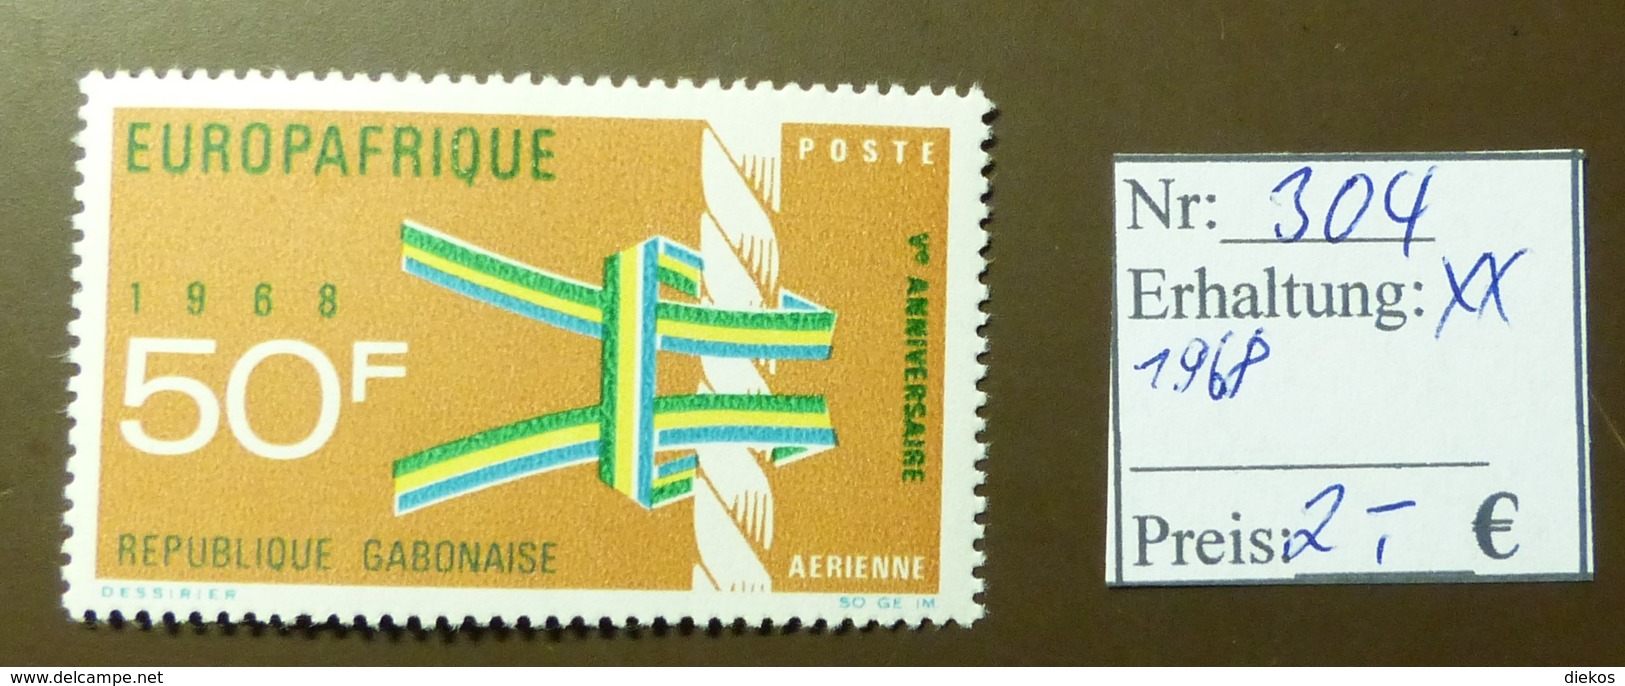 Gabunaise  Europafrique Europa  MiNr: 304  Postfrisch ** MNH     #4908 - Gabon (1960-...)